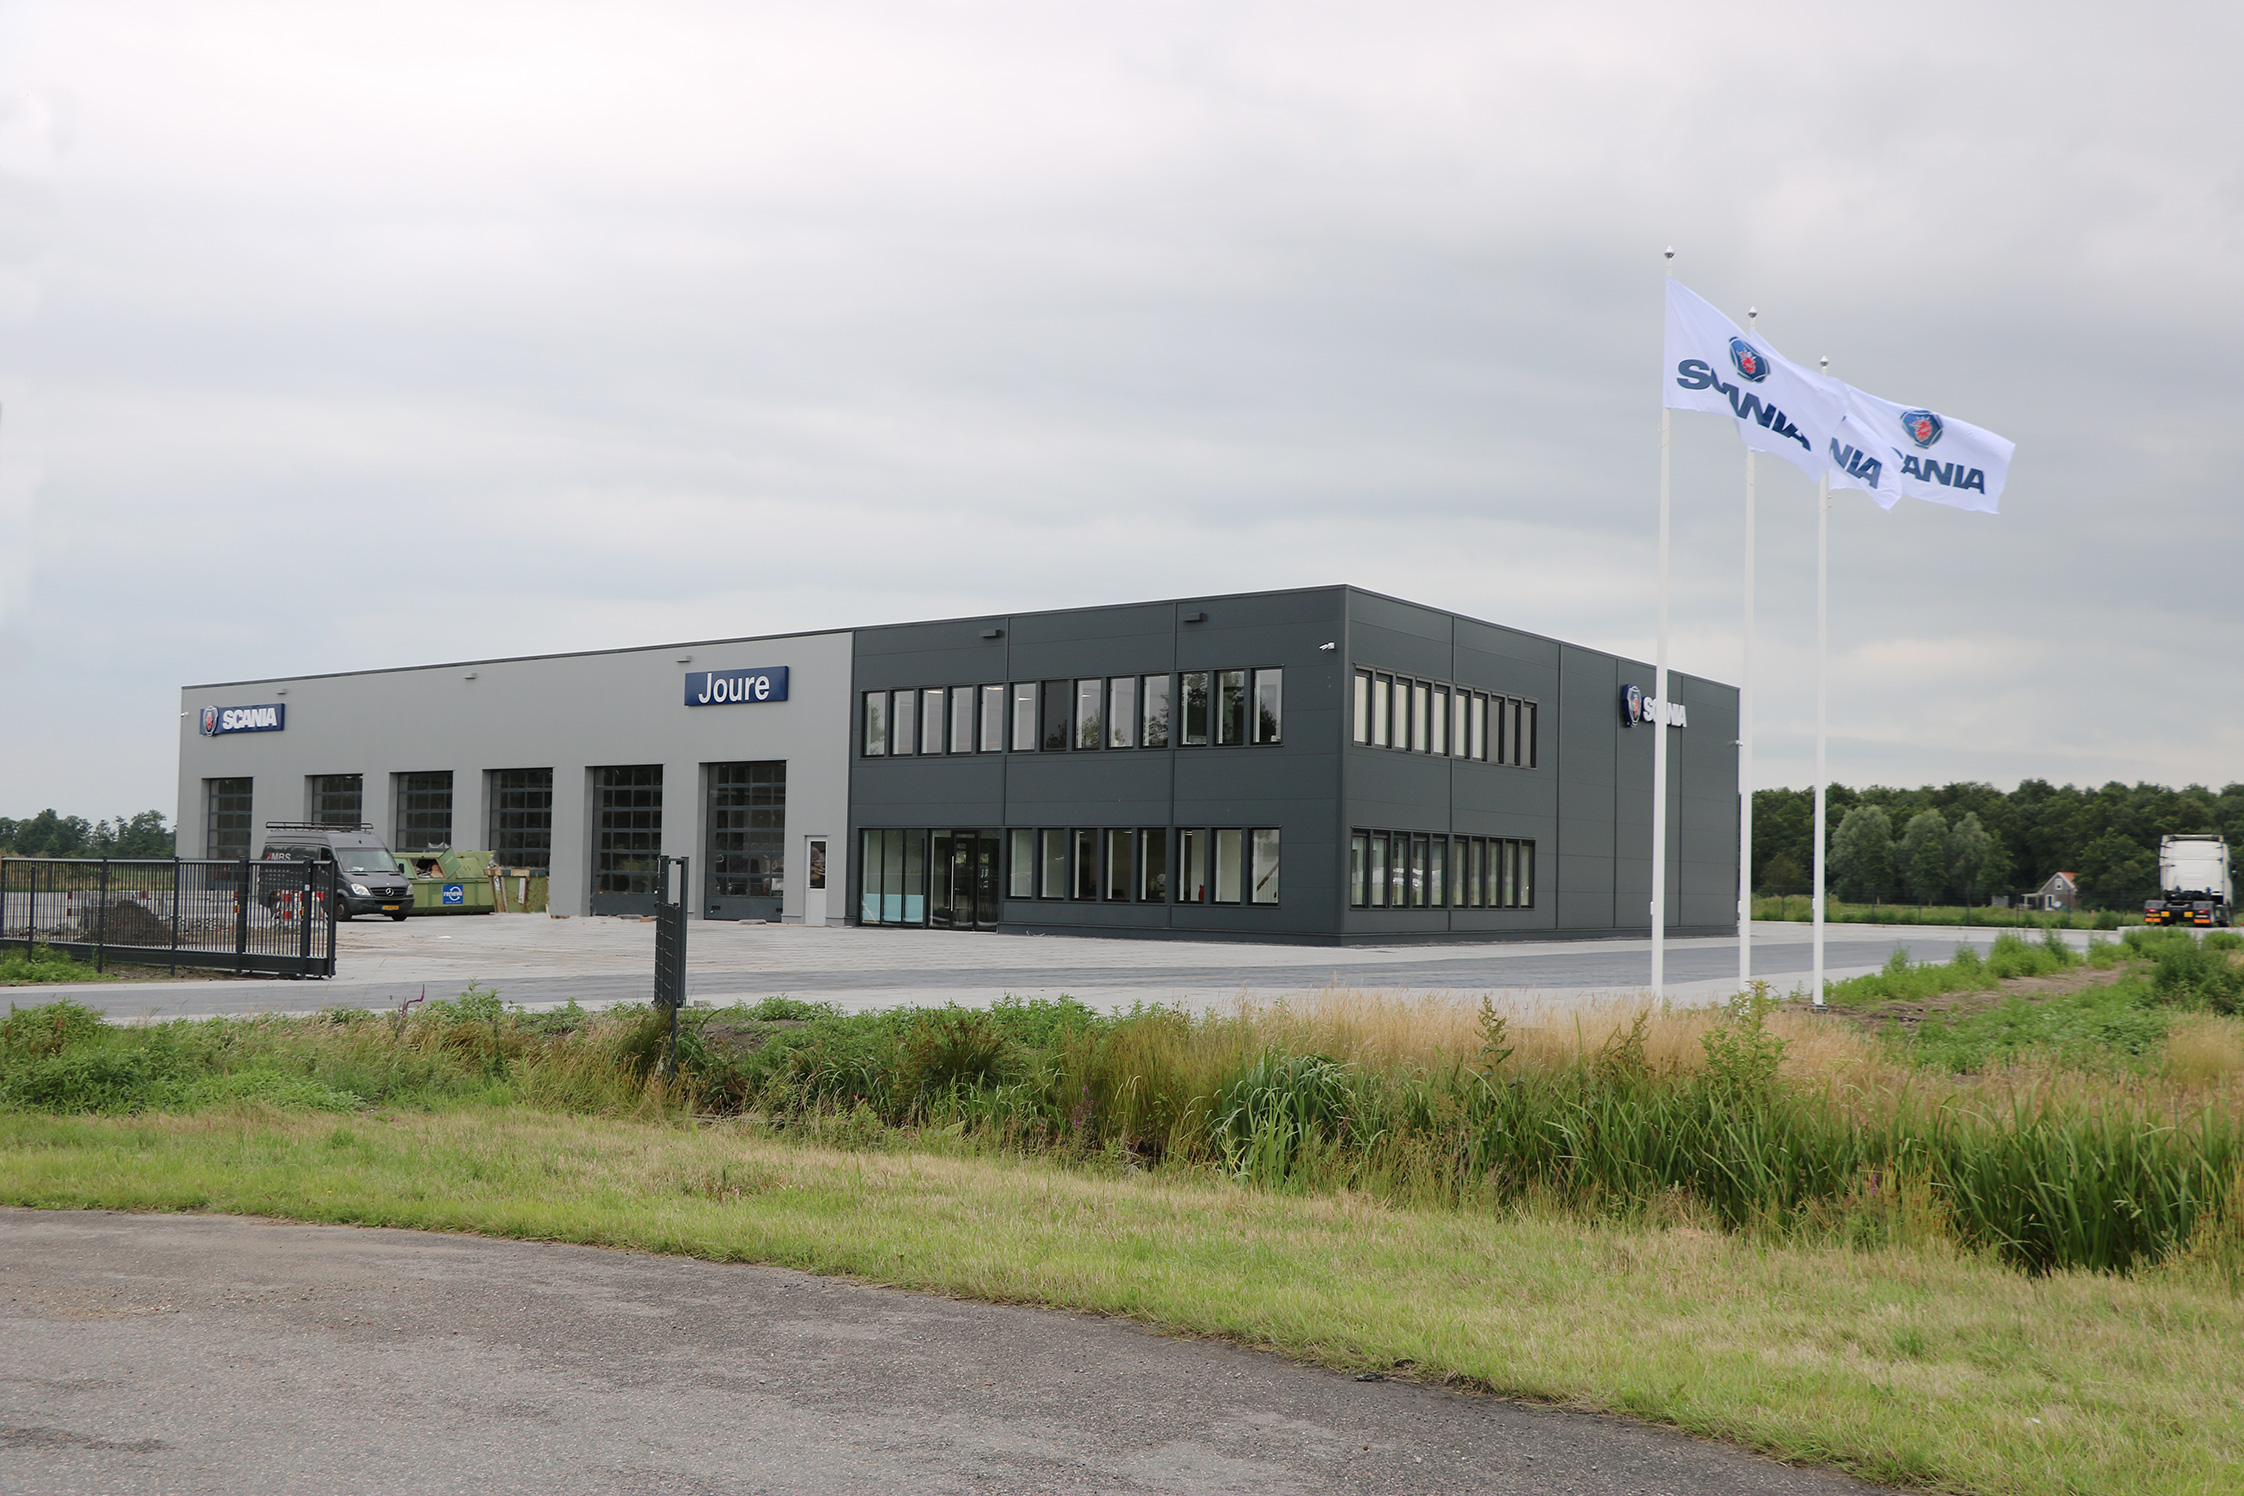 Eerste energie neutrale Scania dealer geopend 